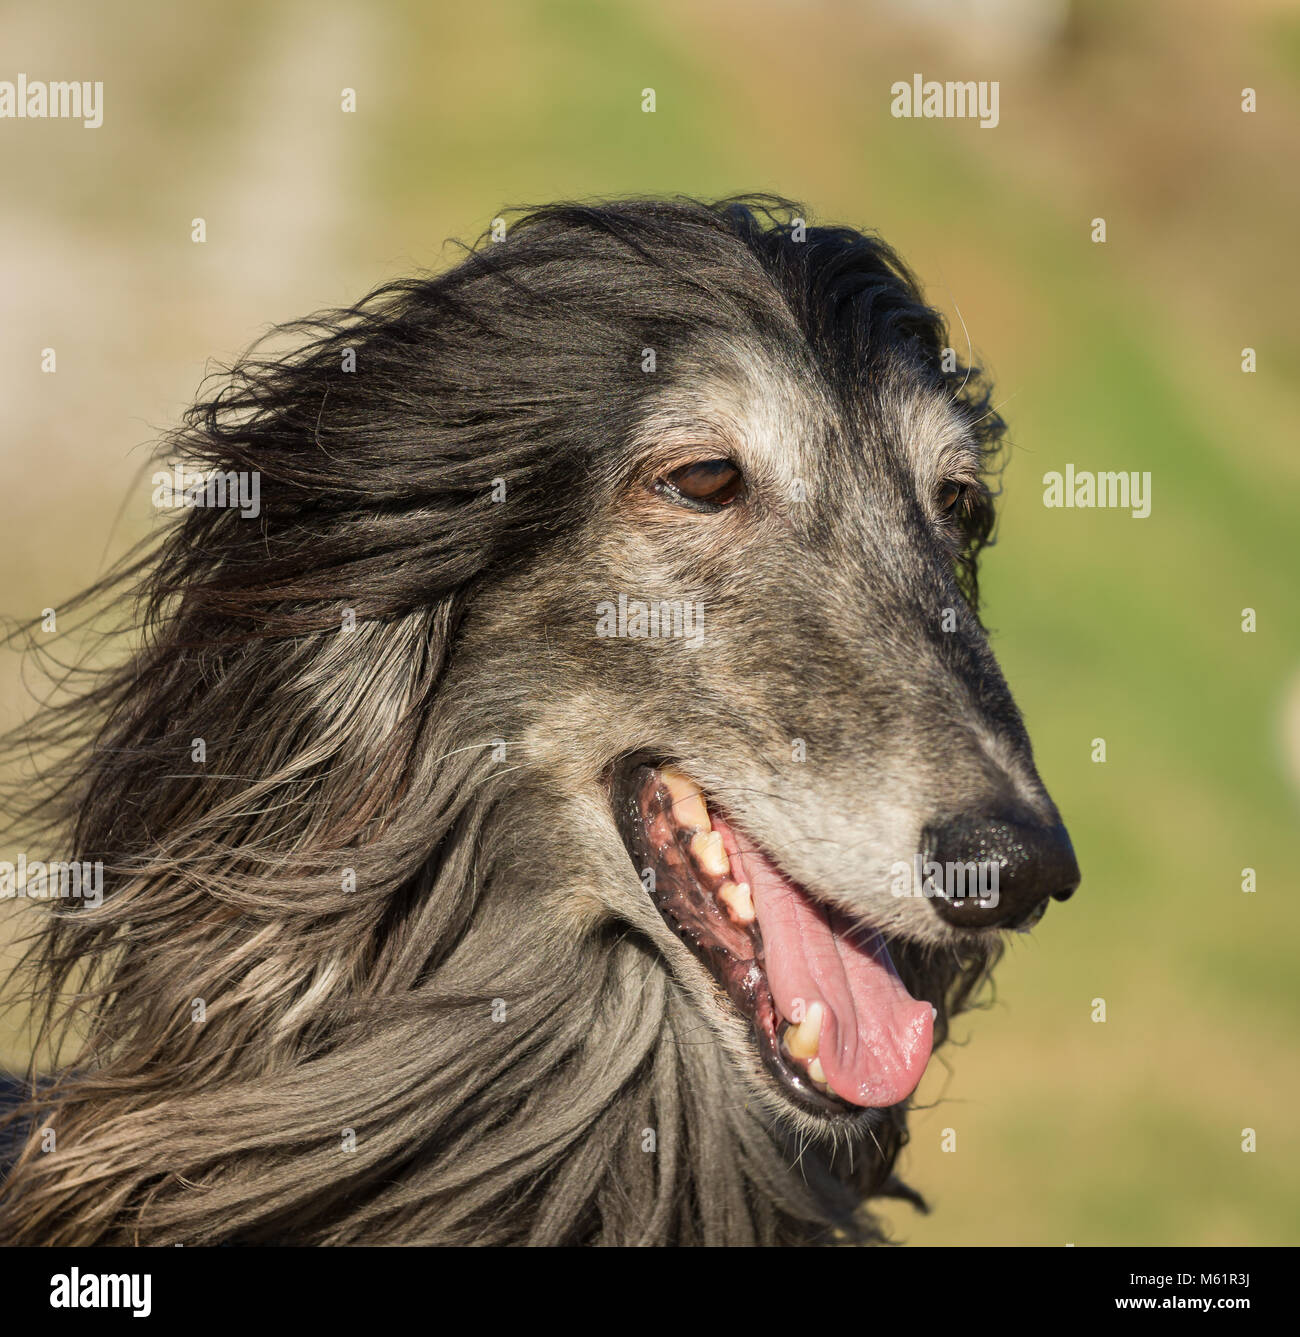 Porträt eines Afghanischen Windhundes. Den Afghanischen Windhund ist ein Hund, der durch seine dicken, feinen, seidigen Fell zeichnet sich die Rasse selektiv gezüchtet wurde für seine u Stockfoto